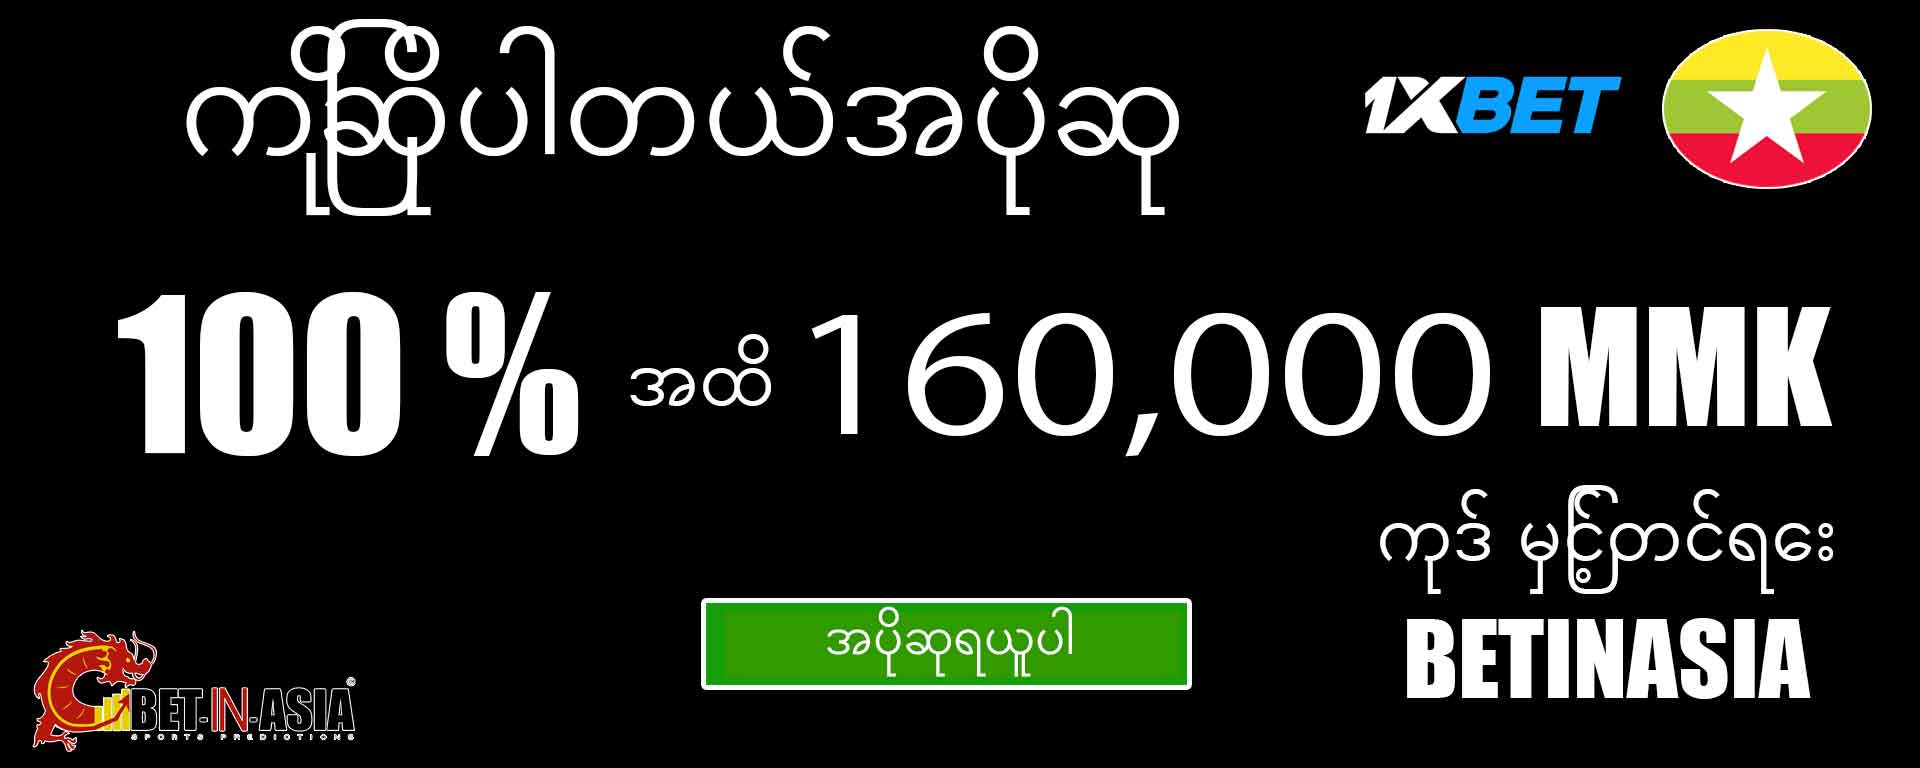 1xbet ပထမ ၀ င်ငွေအတွက် ၁၀၀% ဆုကြေးငွေ ၁၀၀% မြန်မာကြိုဆိုသည်